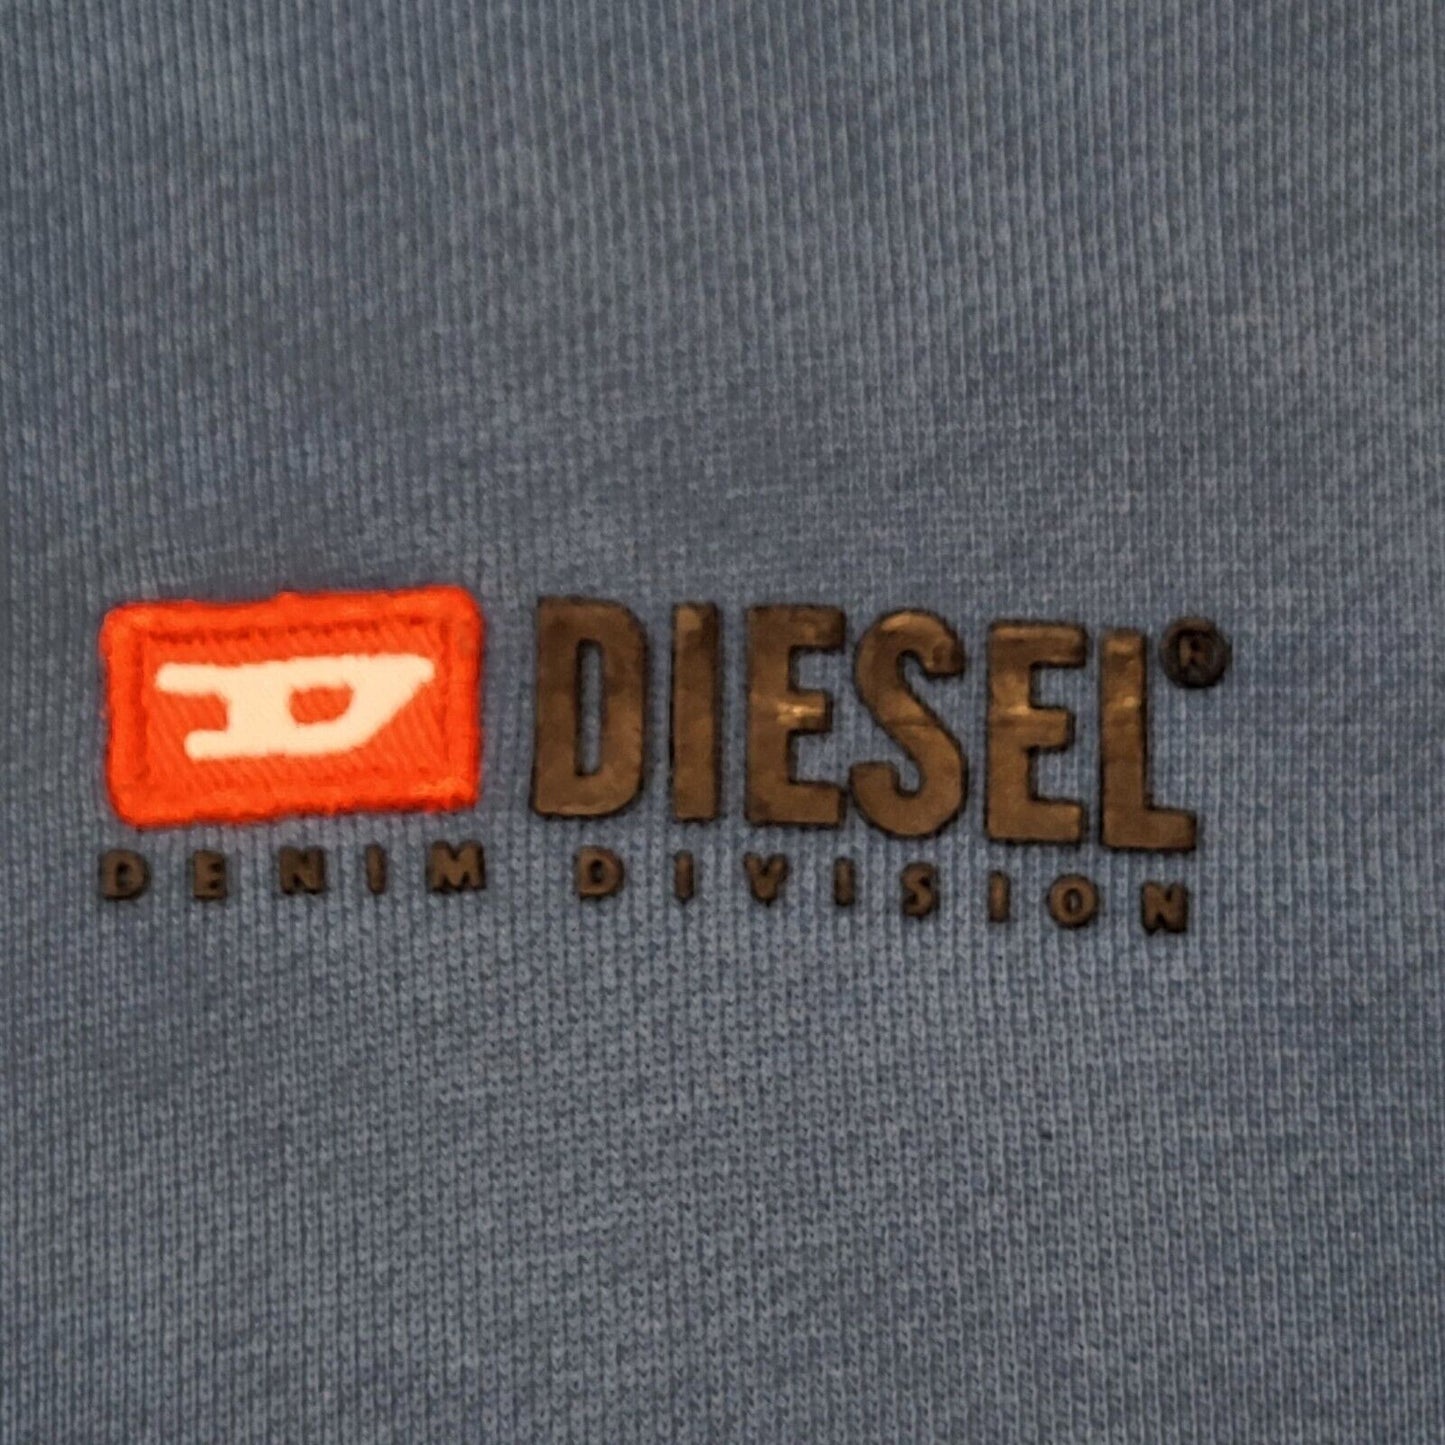 Diesel Hoodie (M)